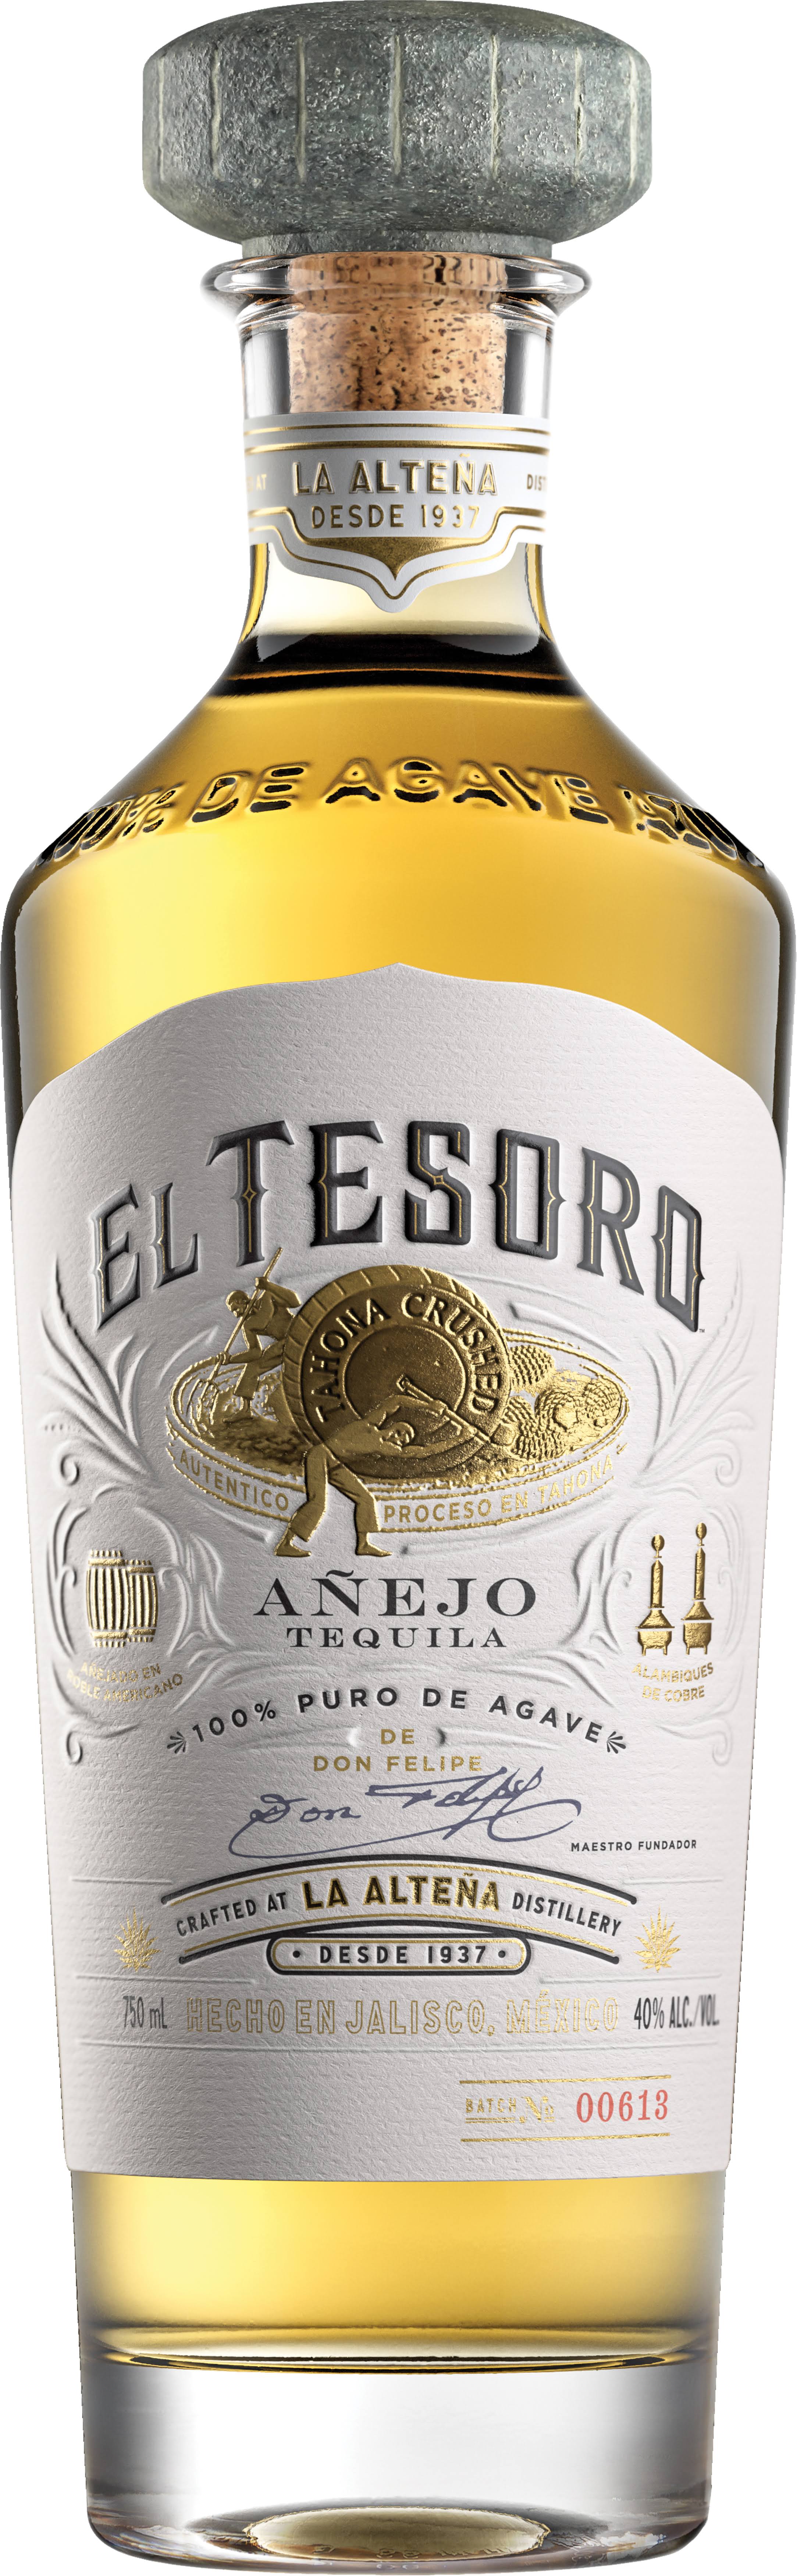 El Tesoro Anejo Tequila - 750 ml bottle